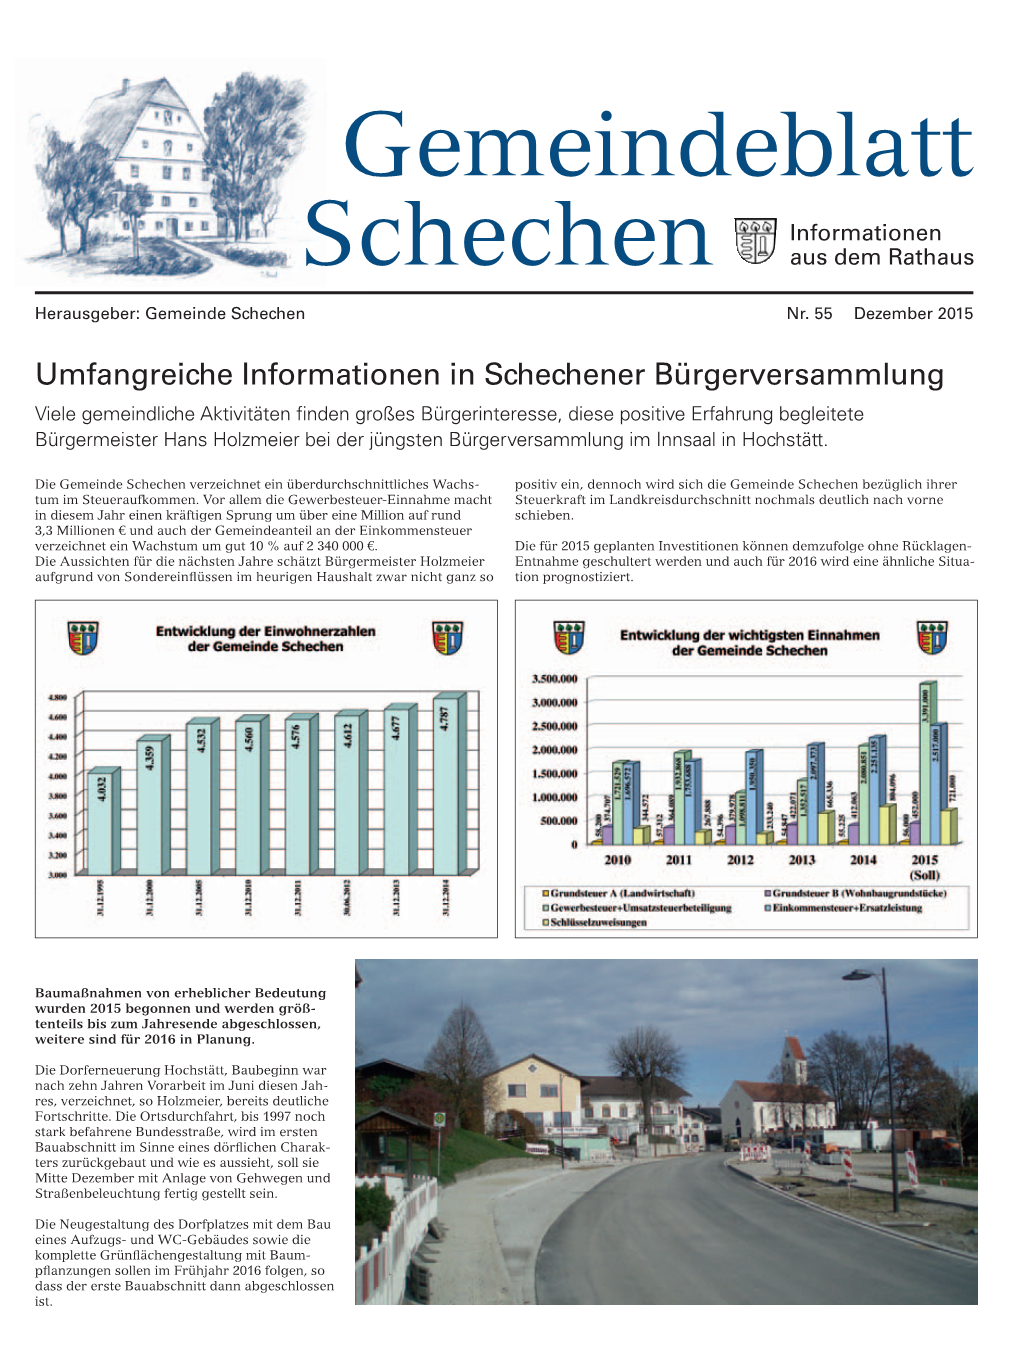 Gemeindeblatt Schechen Informationen